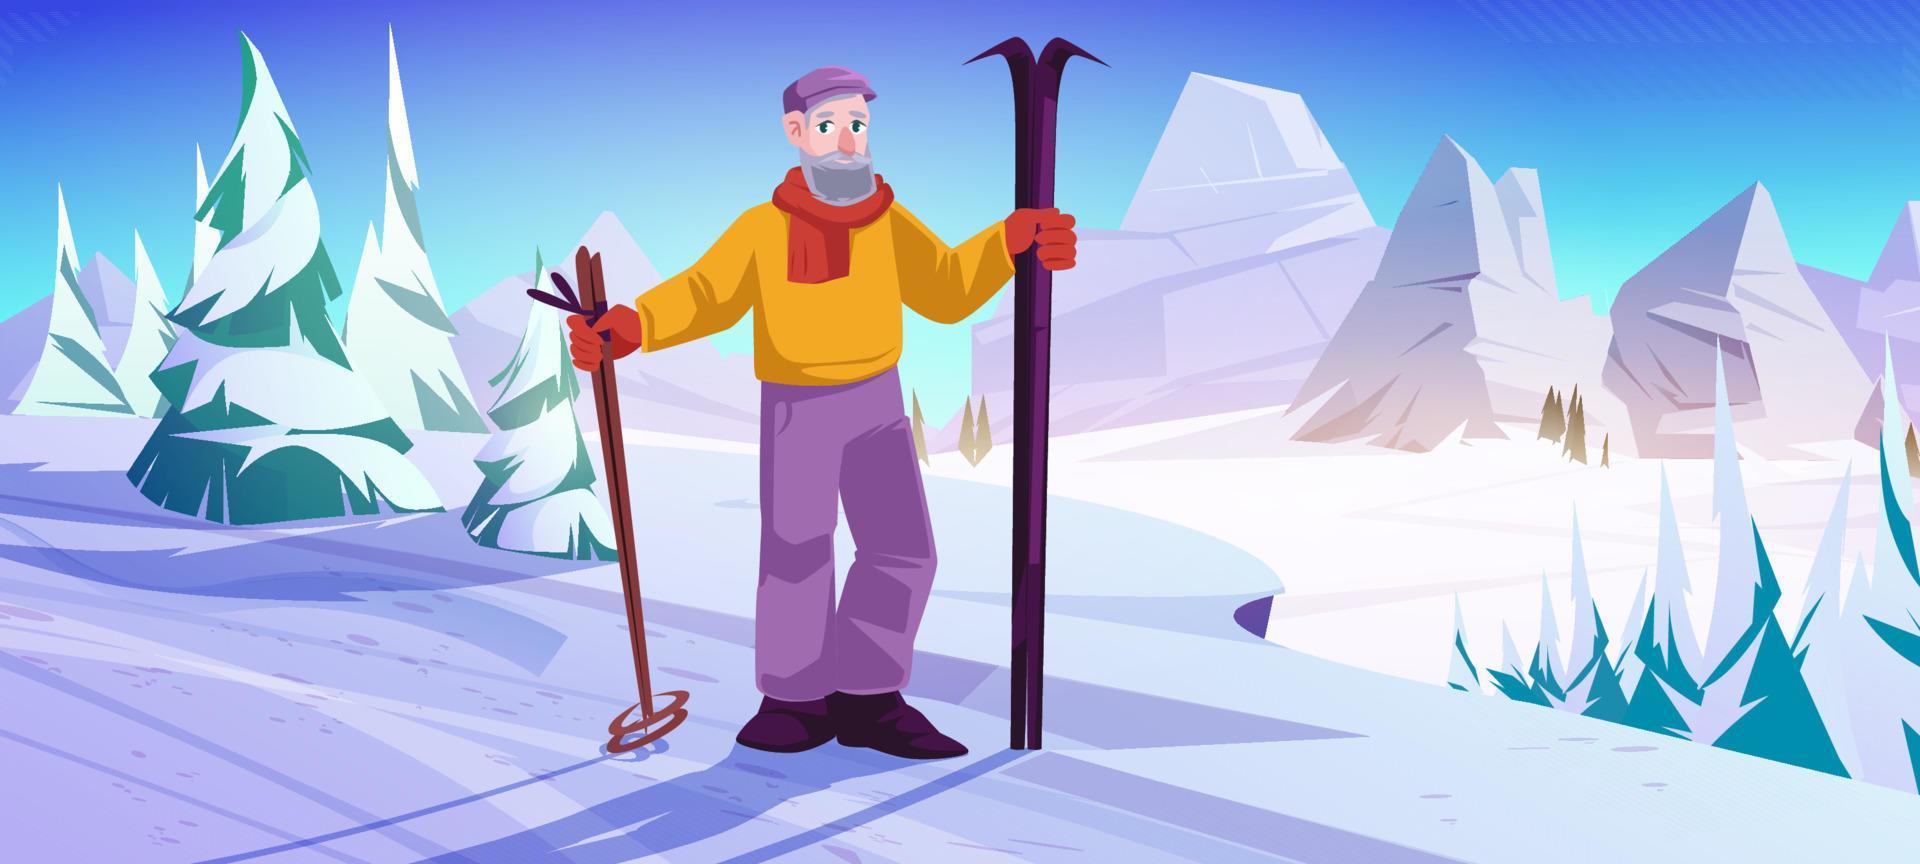 älterer mann mit ski und stöcken stehen auf schneehang vektor